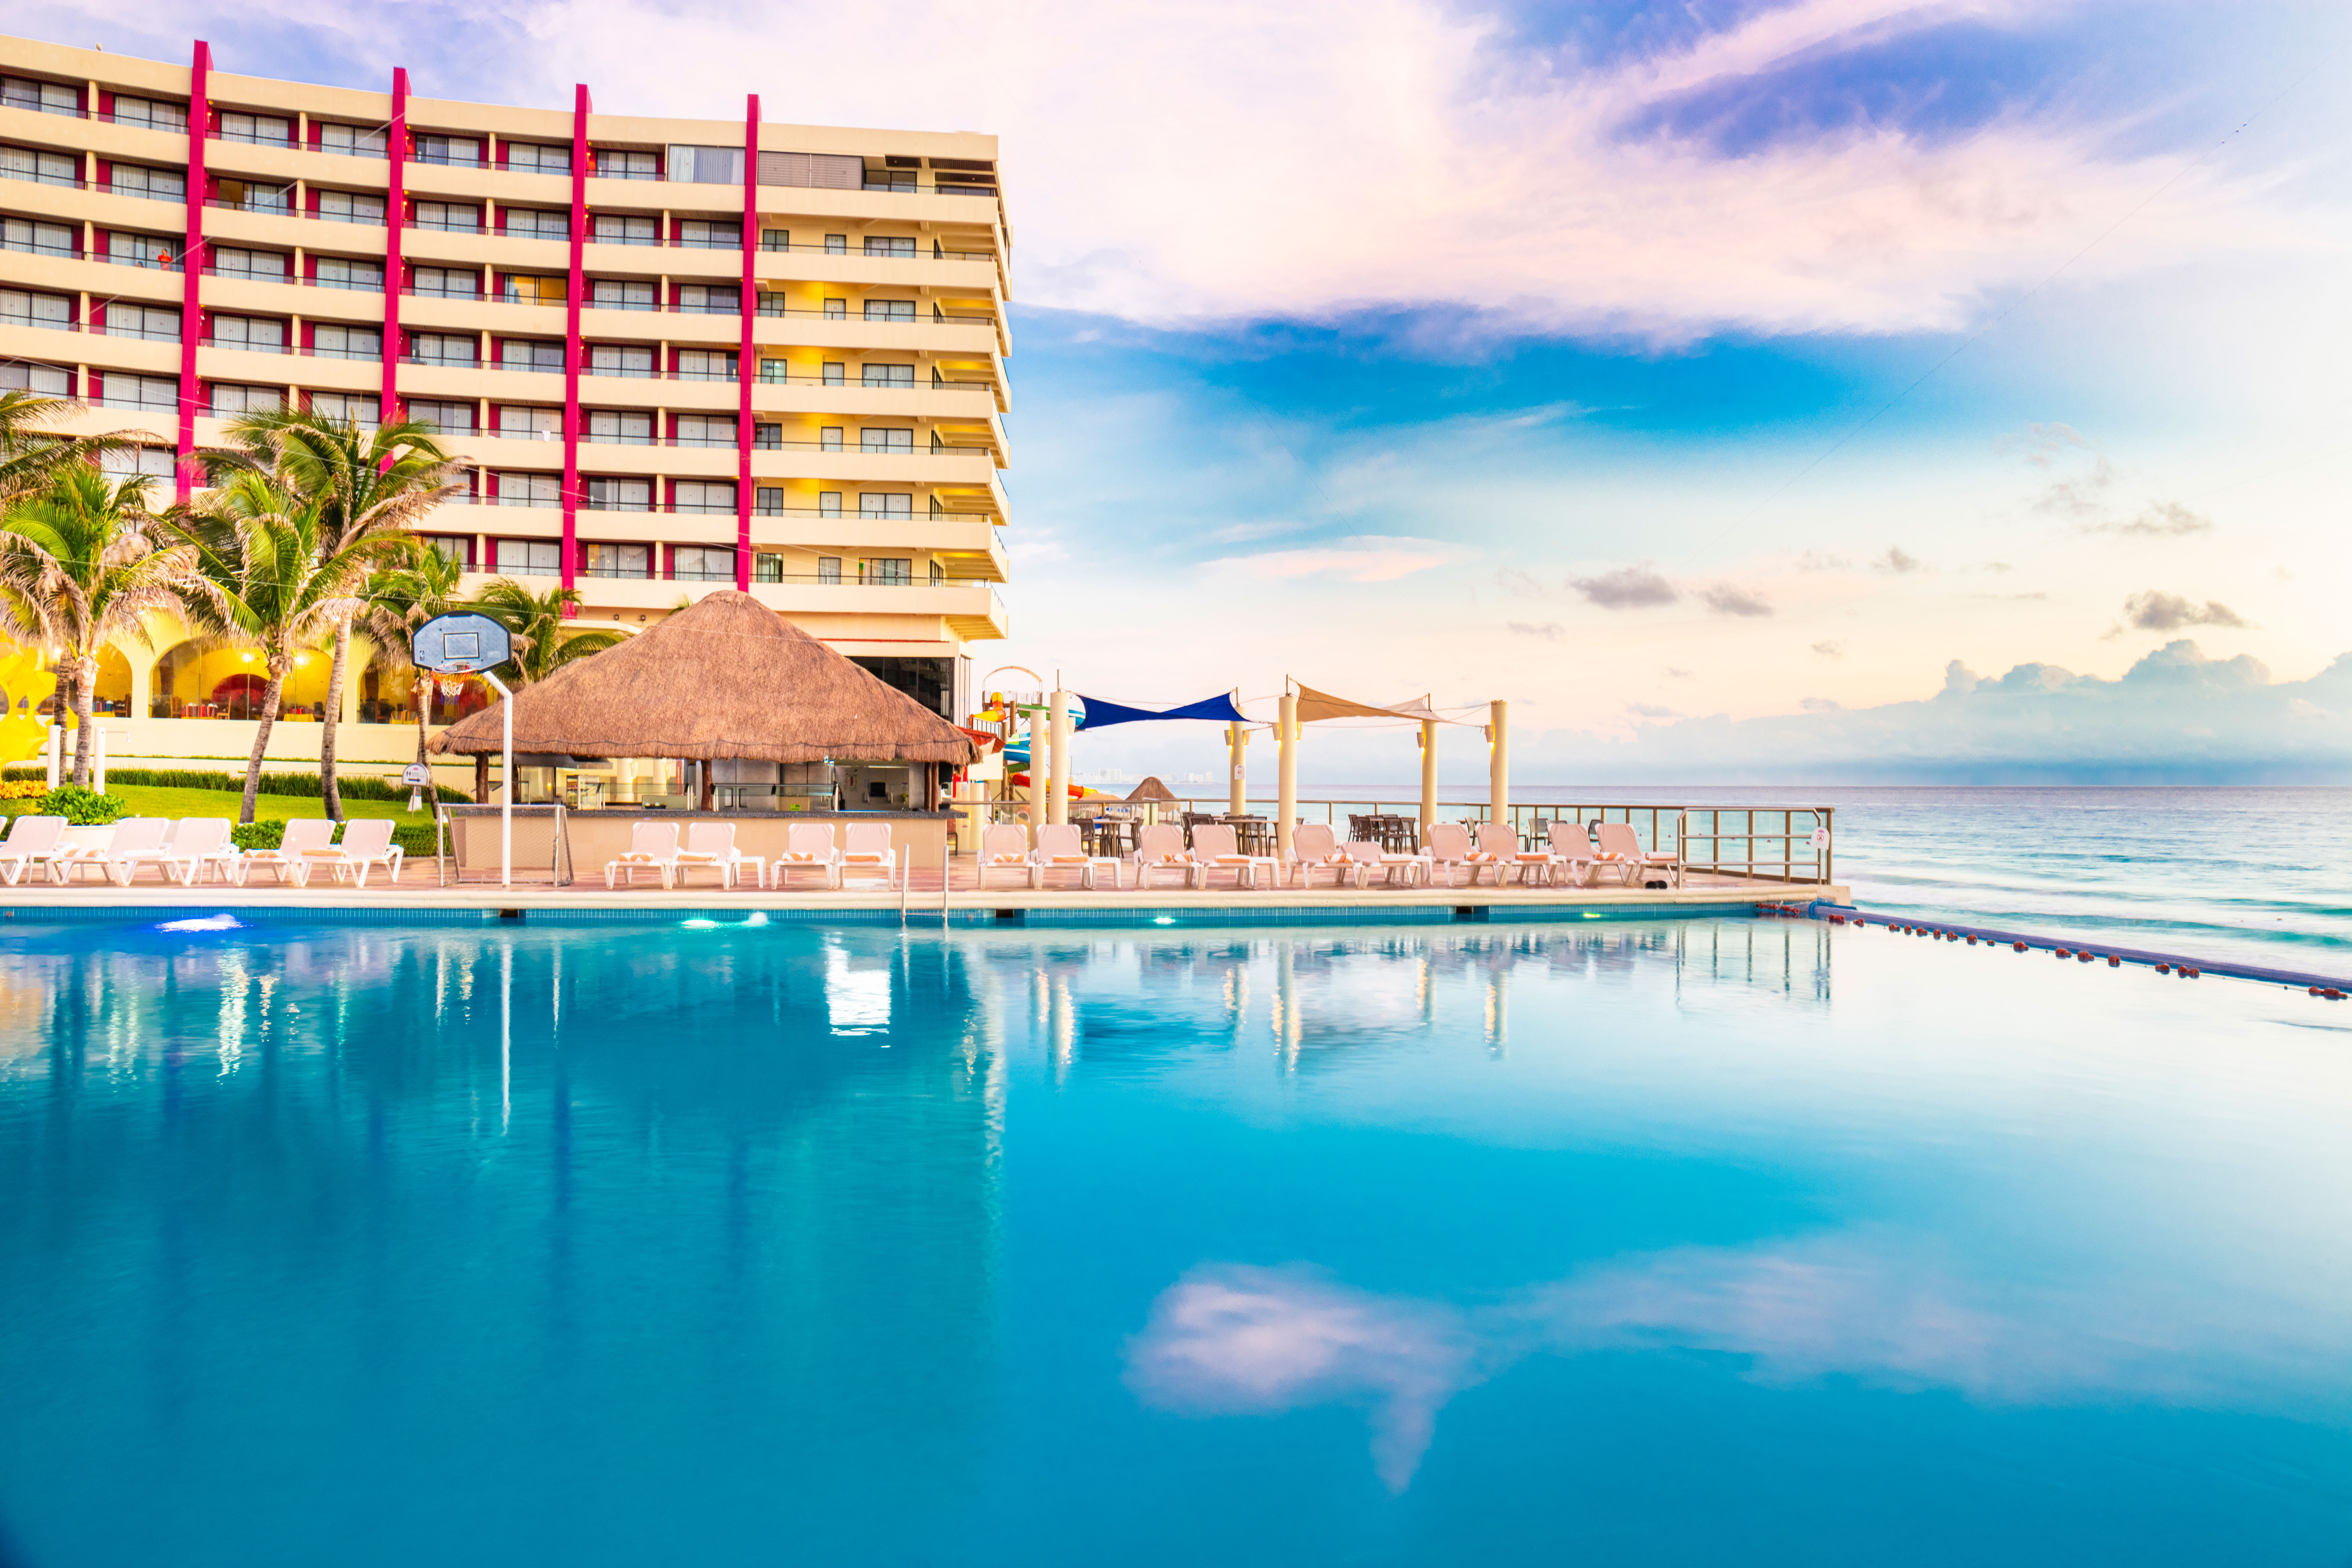 Crown Paradise Club - Cancun - Crown Paradise Club Cancun